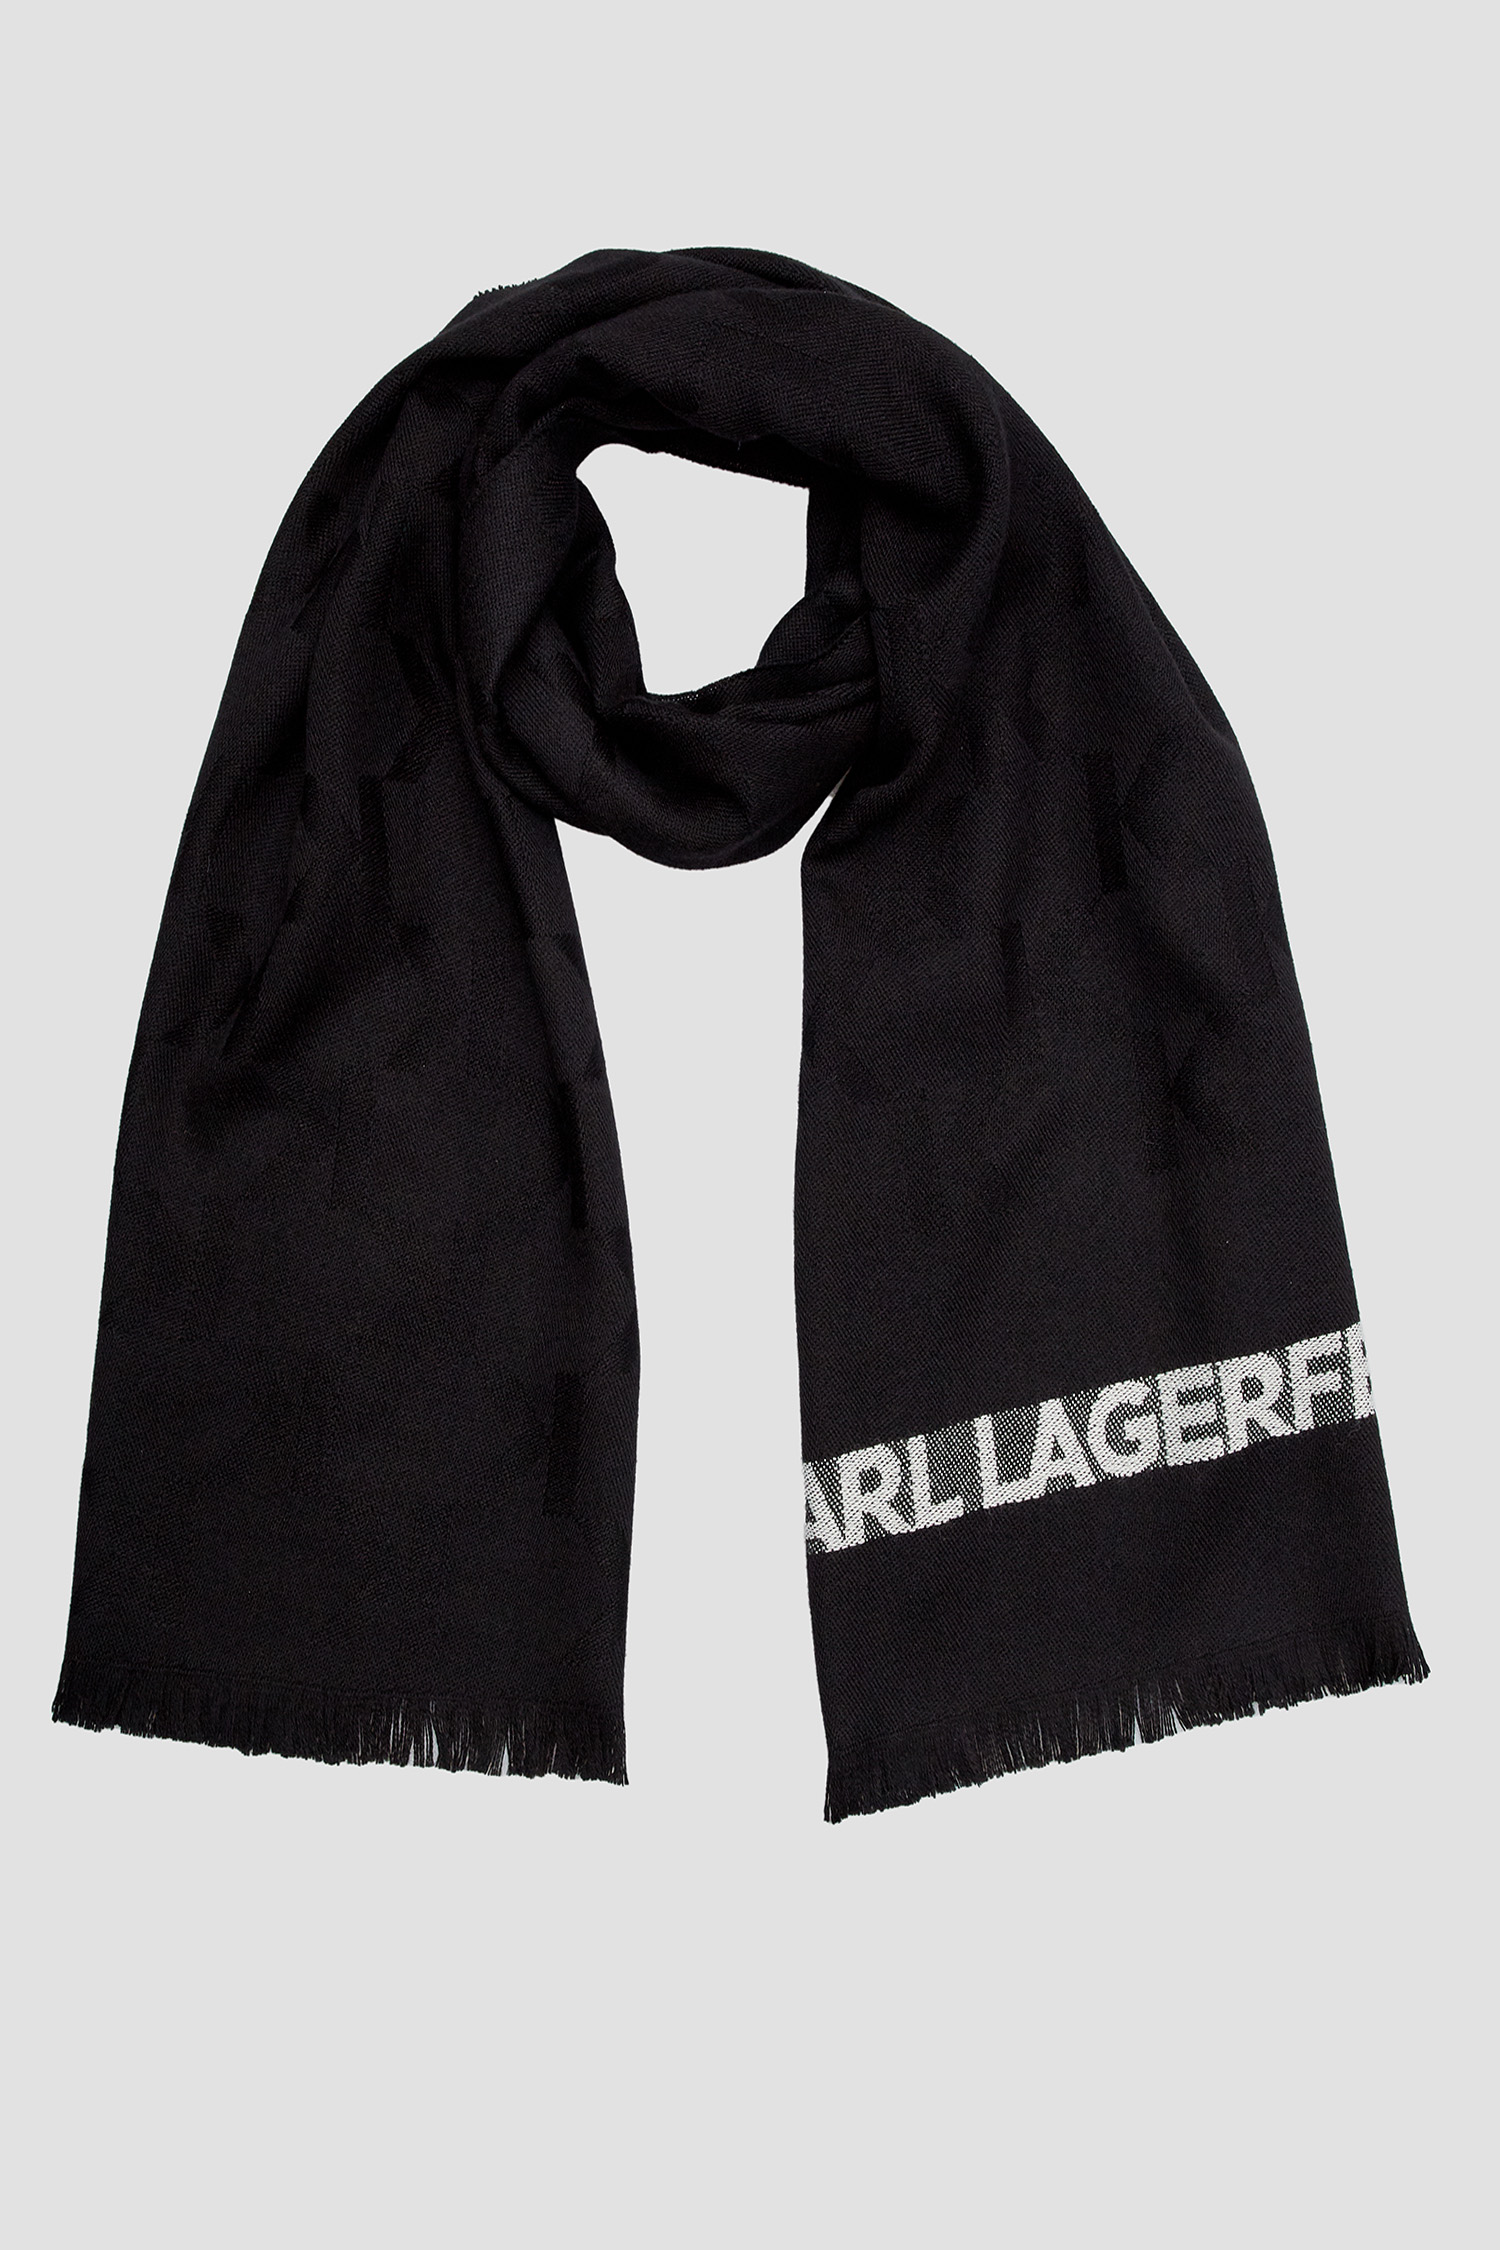 Мужской черный шерстяной шарф с узором Karl Lagerfeld 534135.805001;990